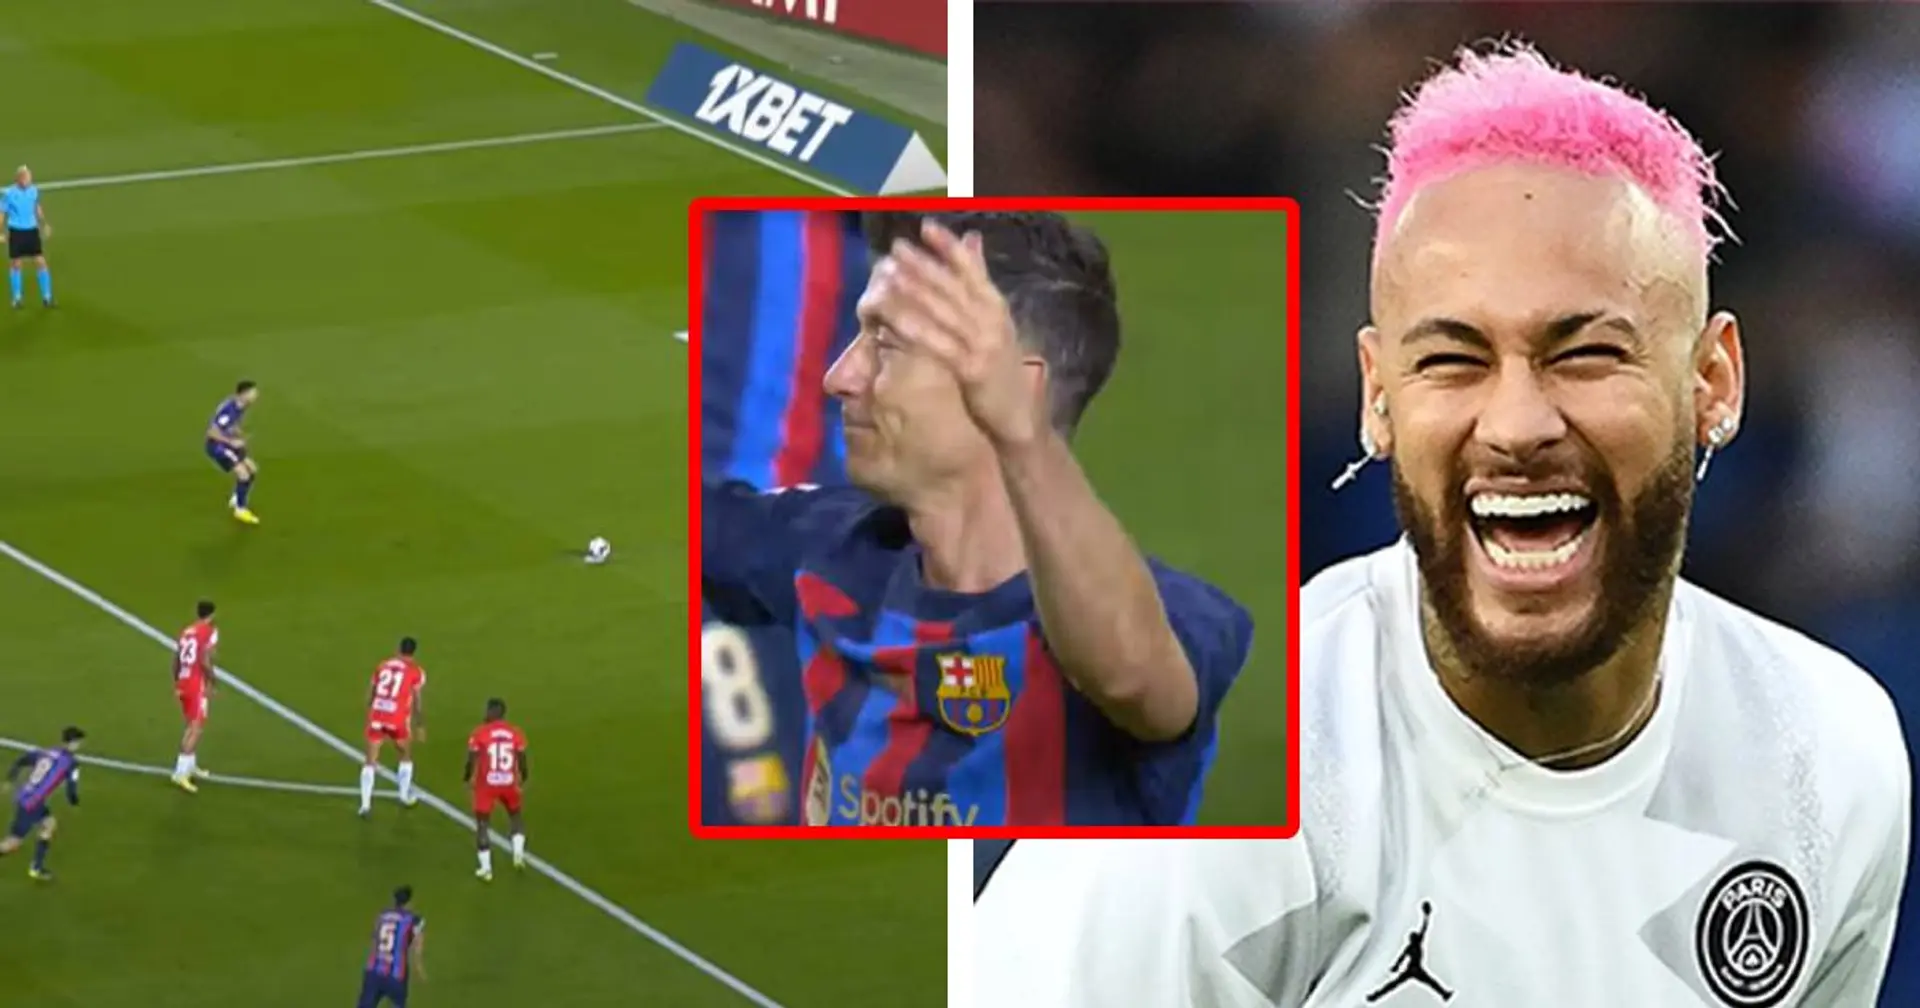 "N'est pas Neymar qui veut..." : Lewandowski tente de marquer un peno comme le Brésilien - une piètre copie